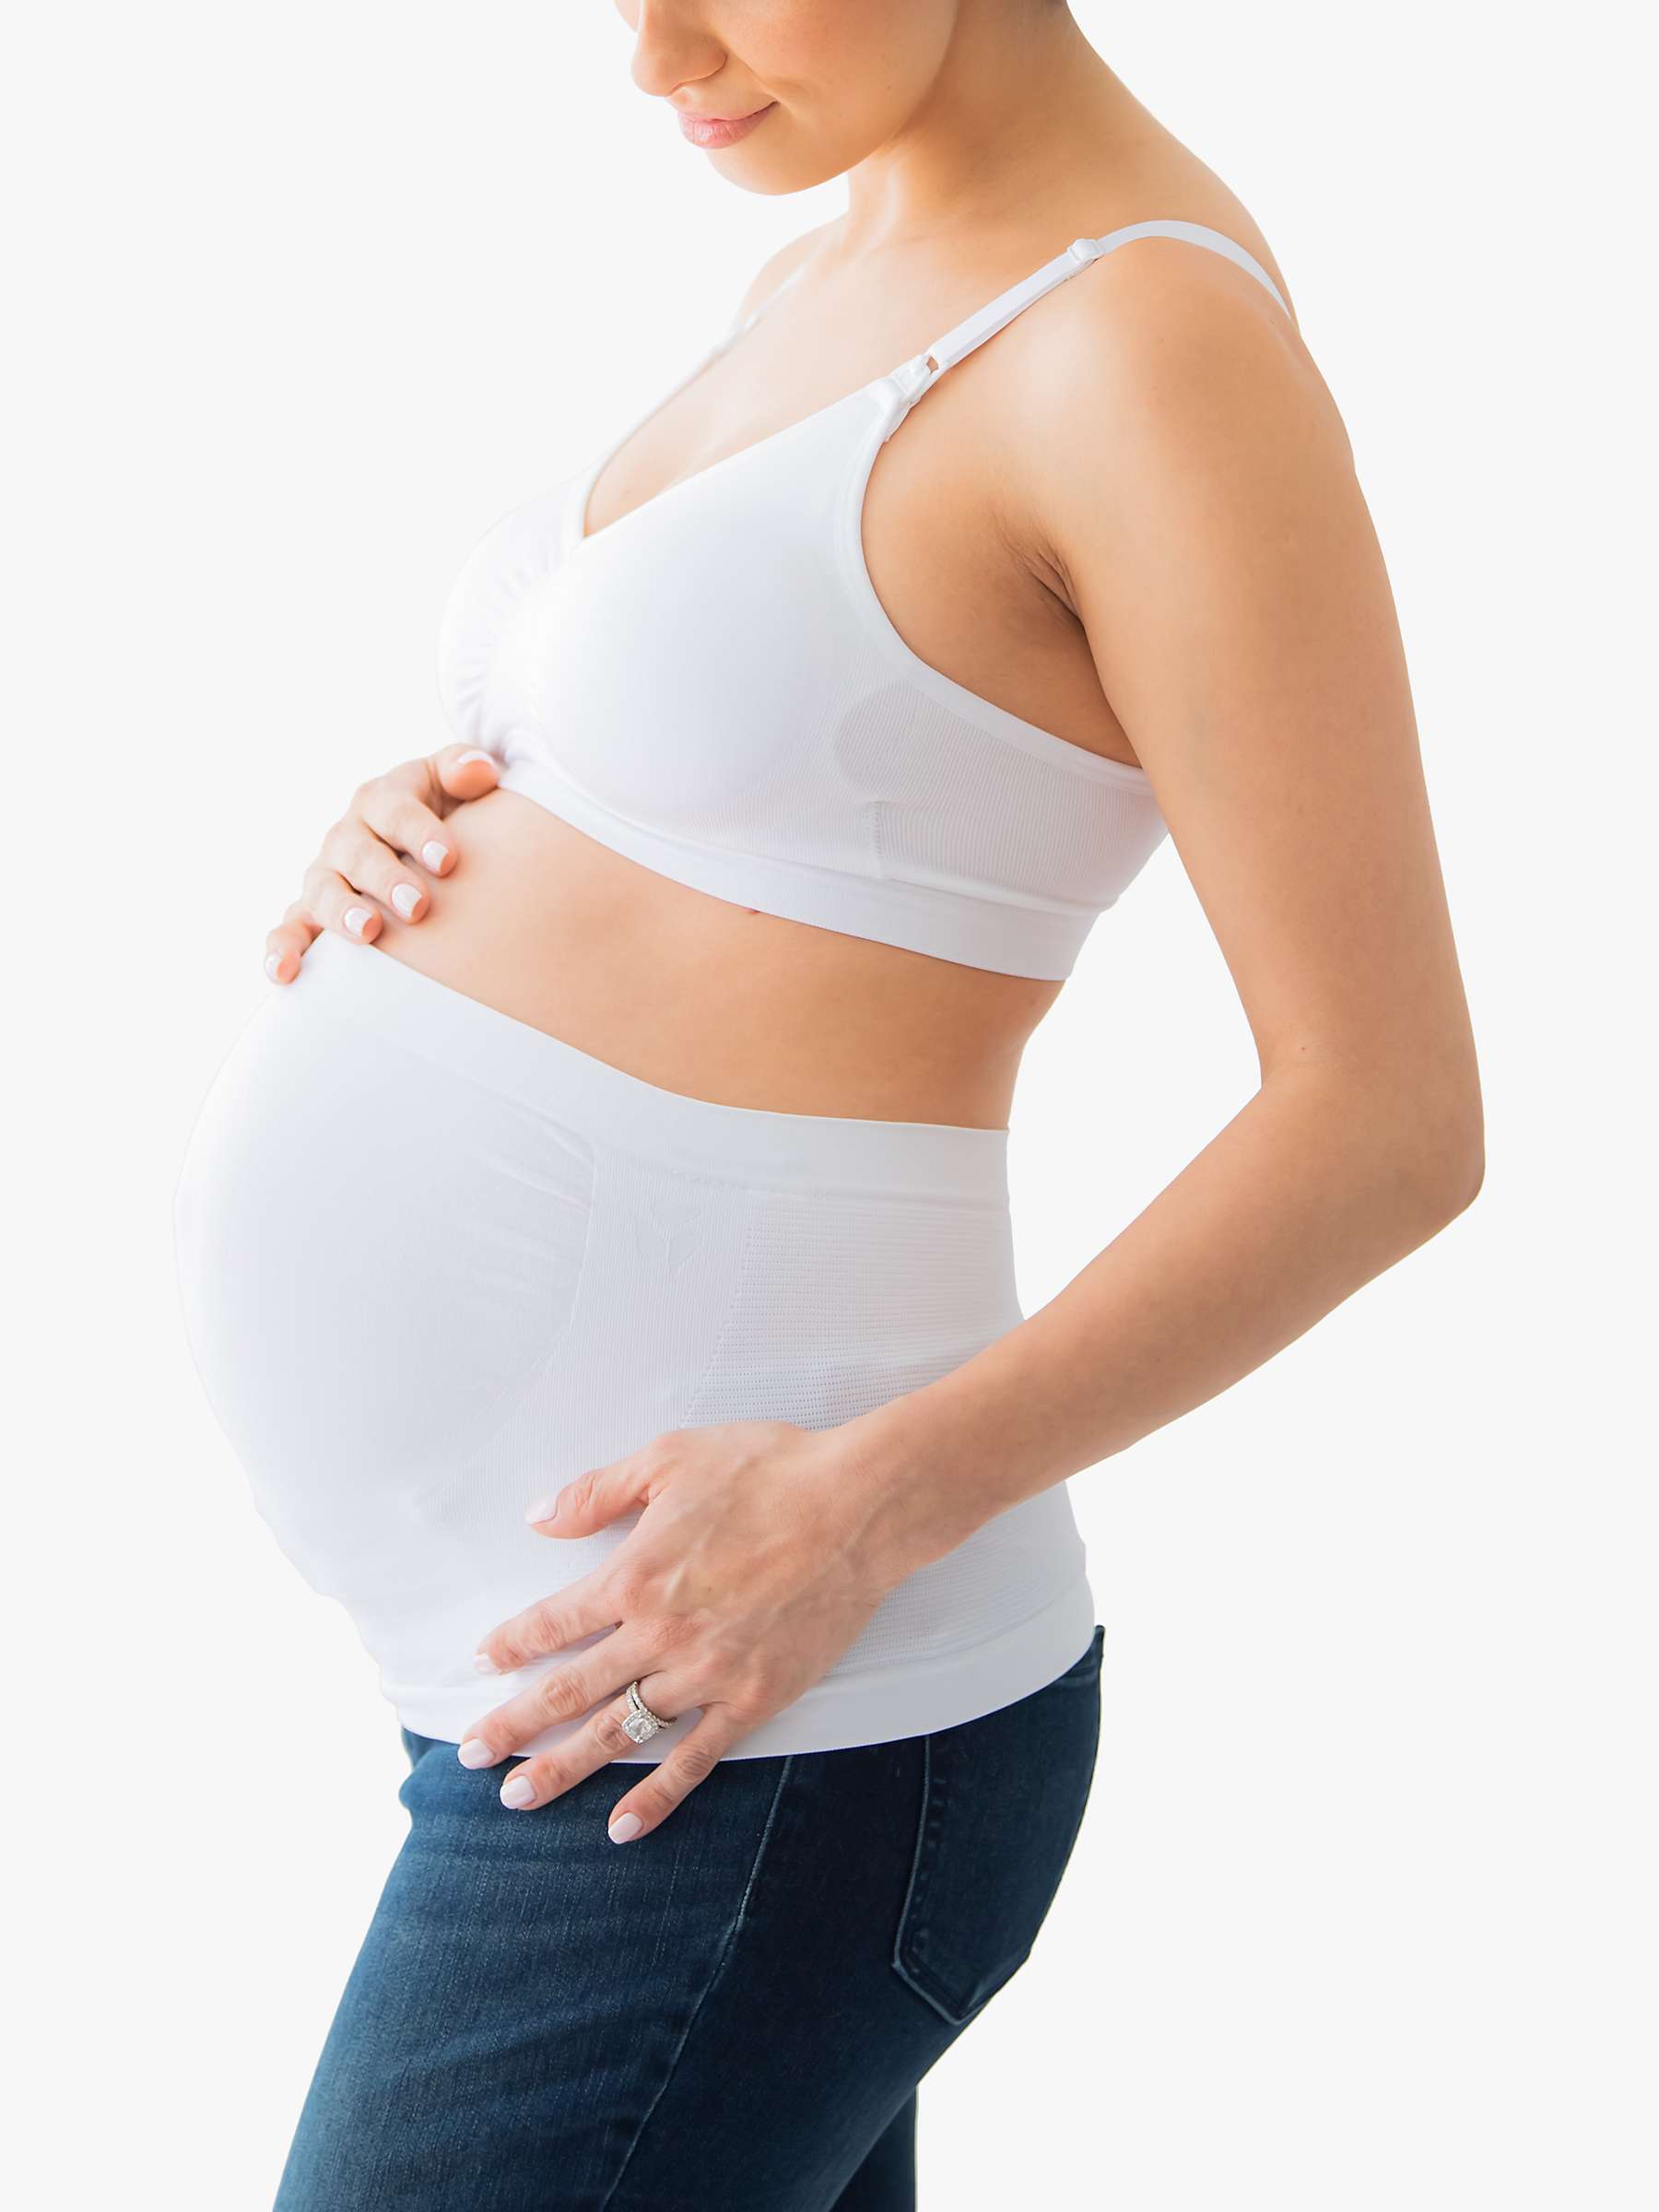 Buy Medela Maternity & Postpartum Belly Support Band Online at johnlewis.com